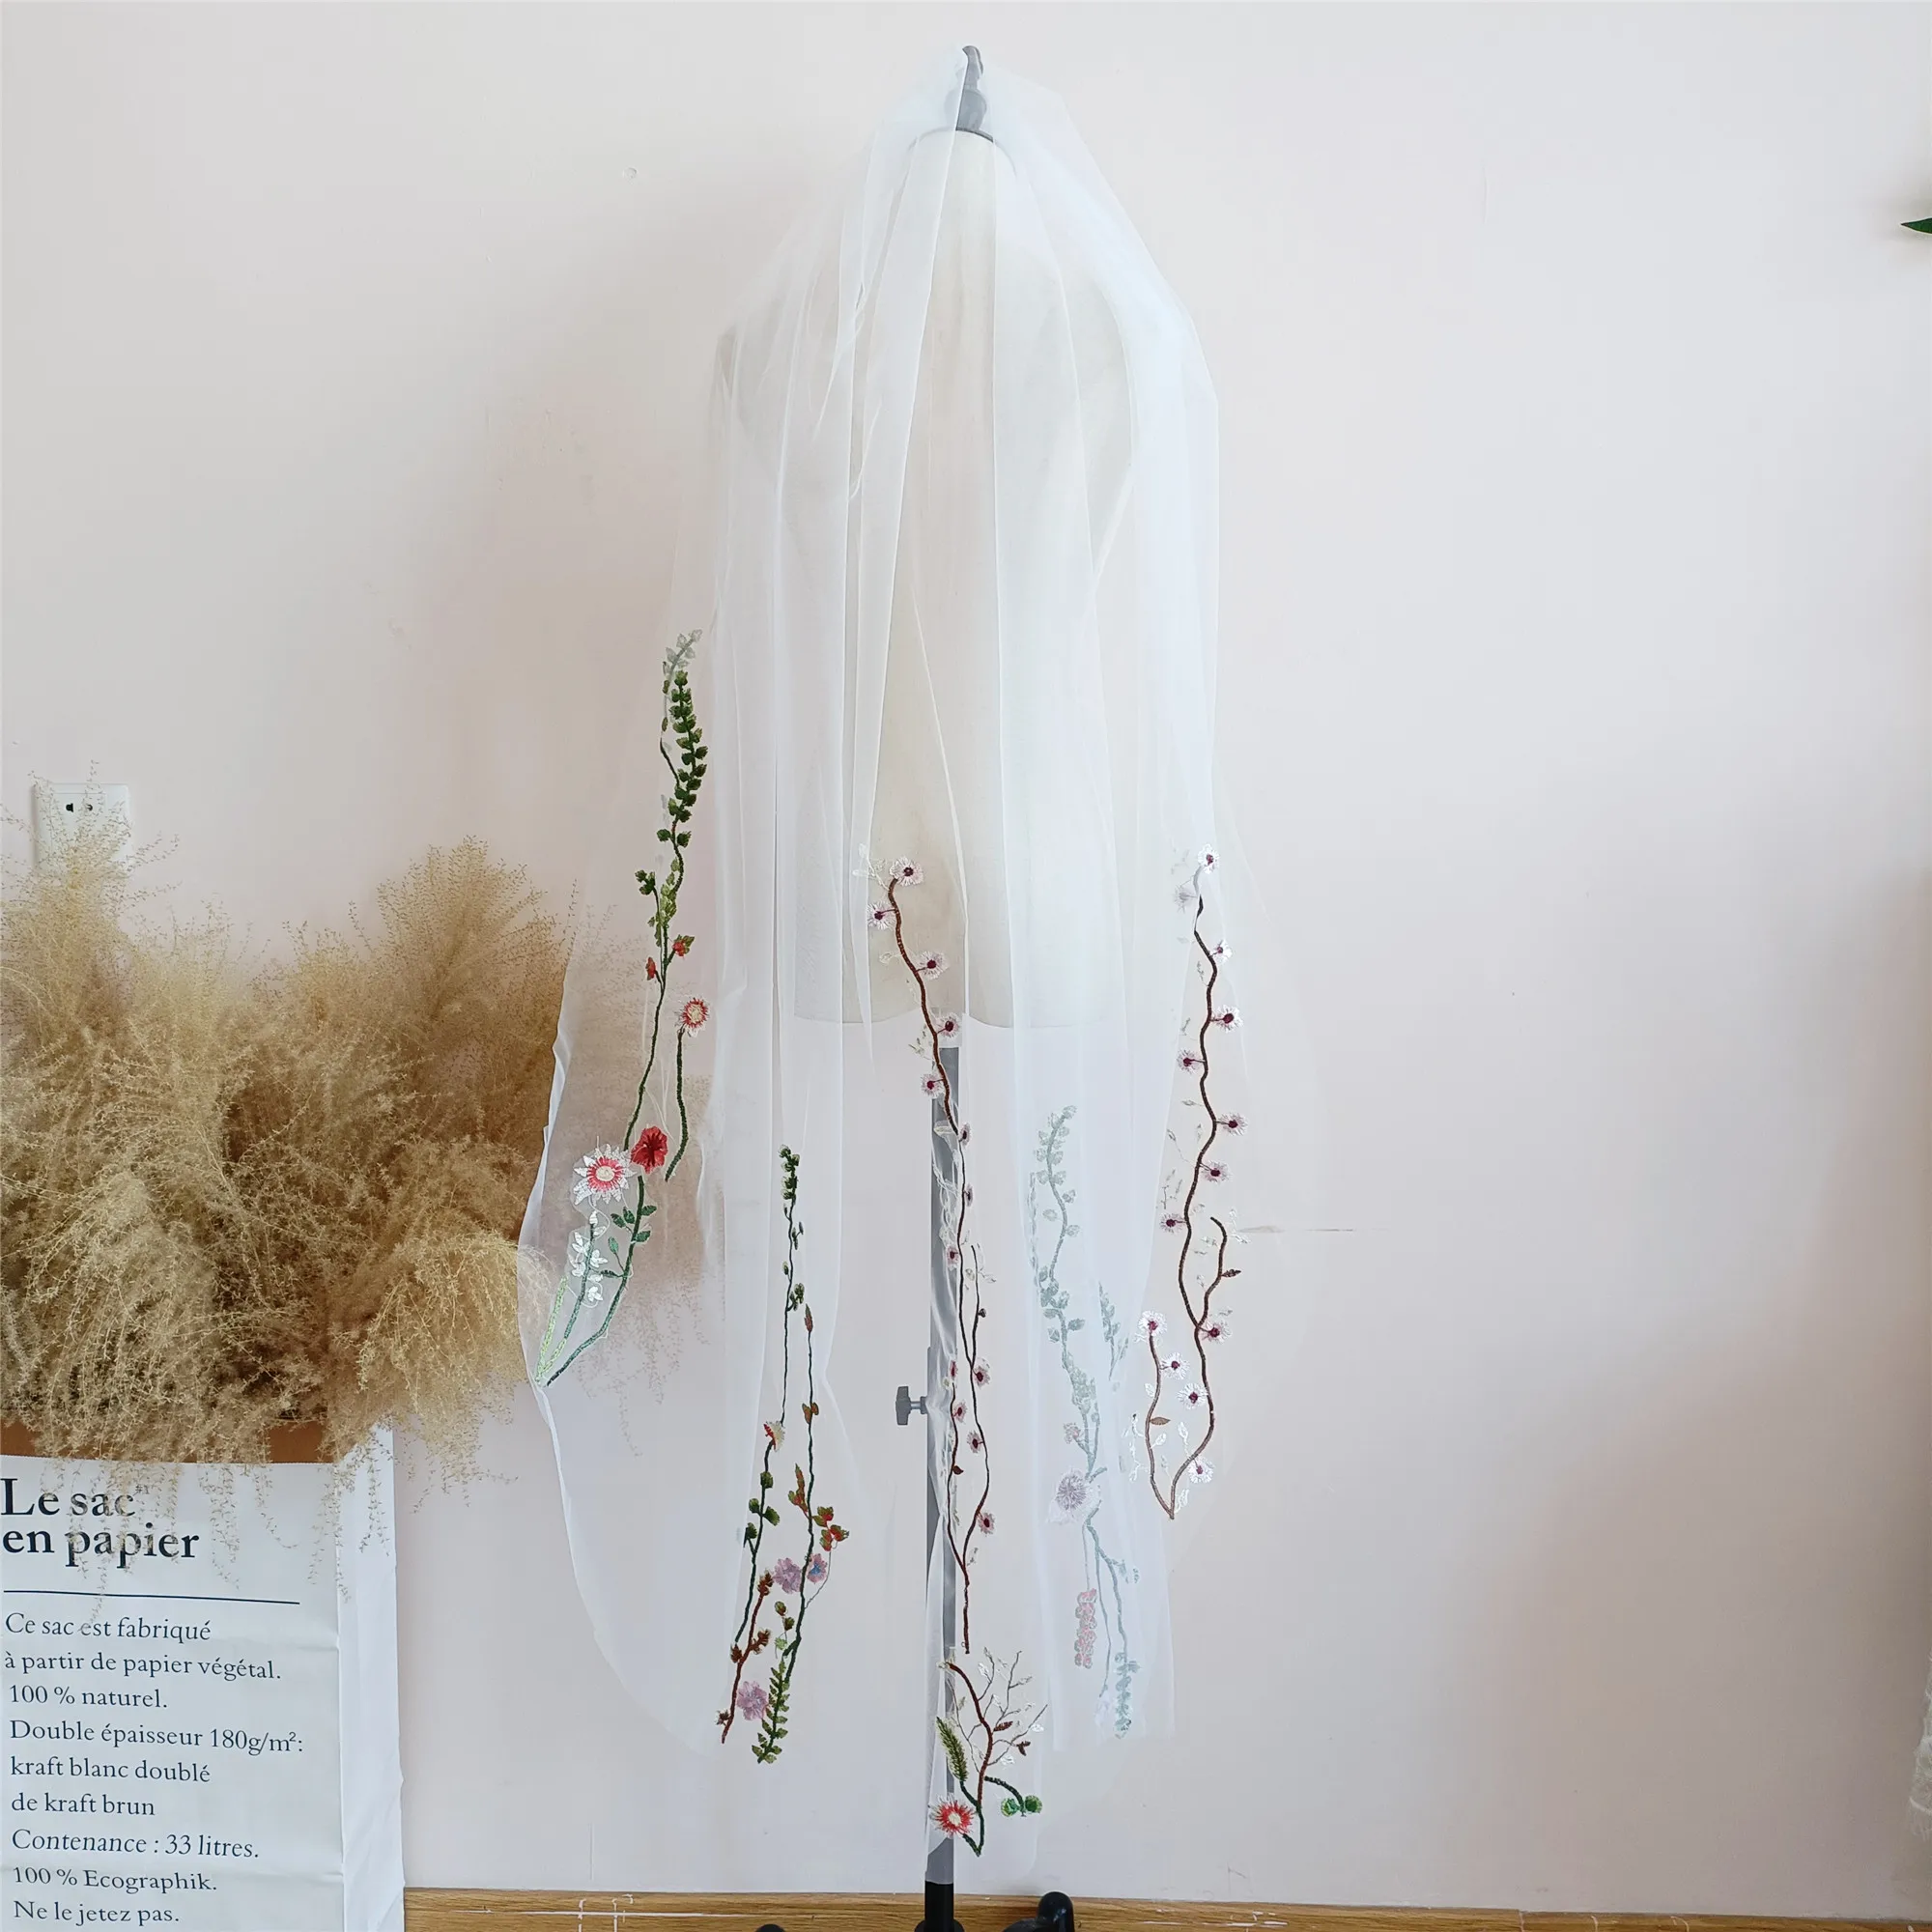 Floral Lace Embroidery Wedding Veils 80cm/150cm/200cm Vintage Bohemian Elegant Bridal Veil Tulle Hair Bride Accoriess 05261402 | Свадьбы и